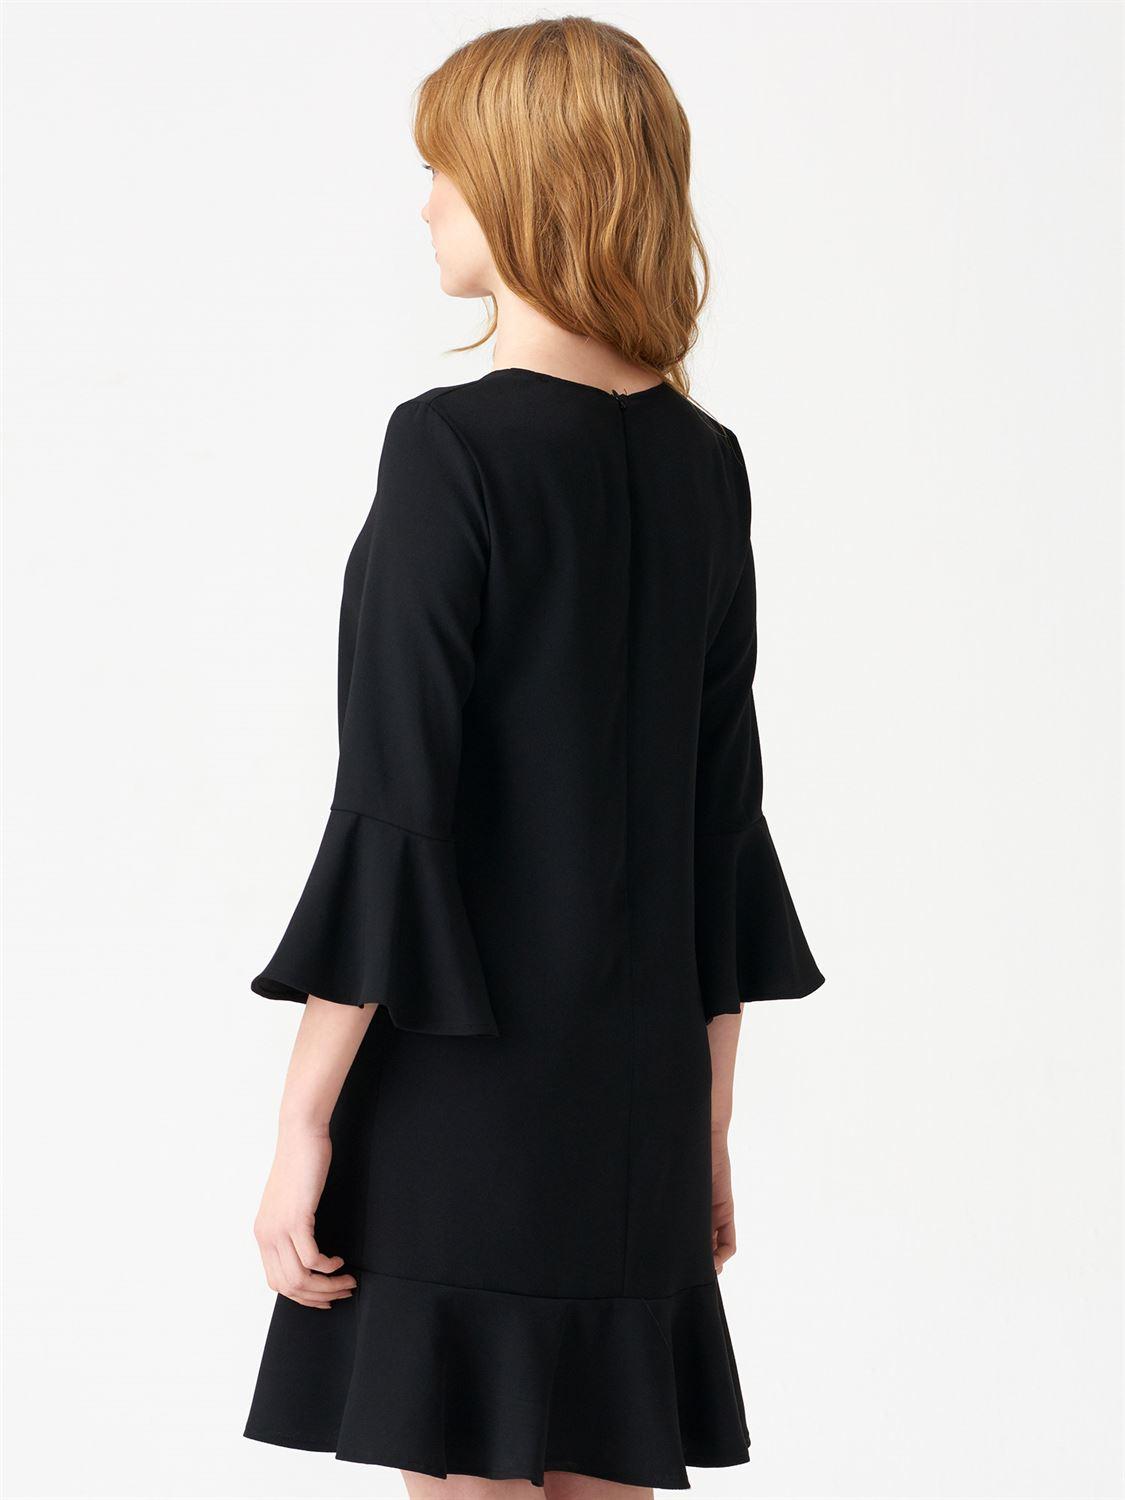 9656 Kolu Ve Eteği Volanlı Elbise-Siyah